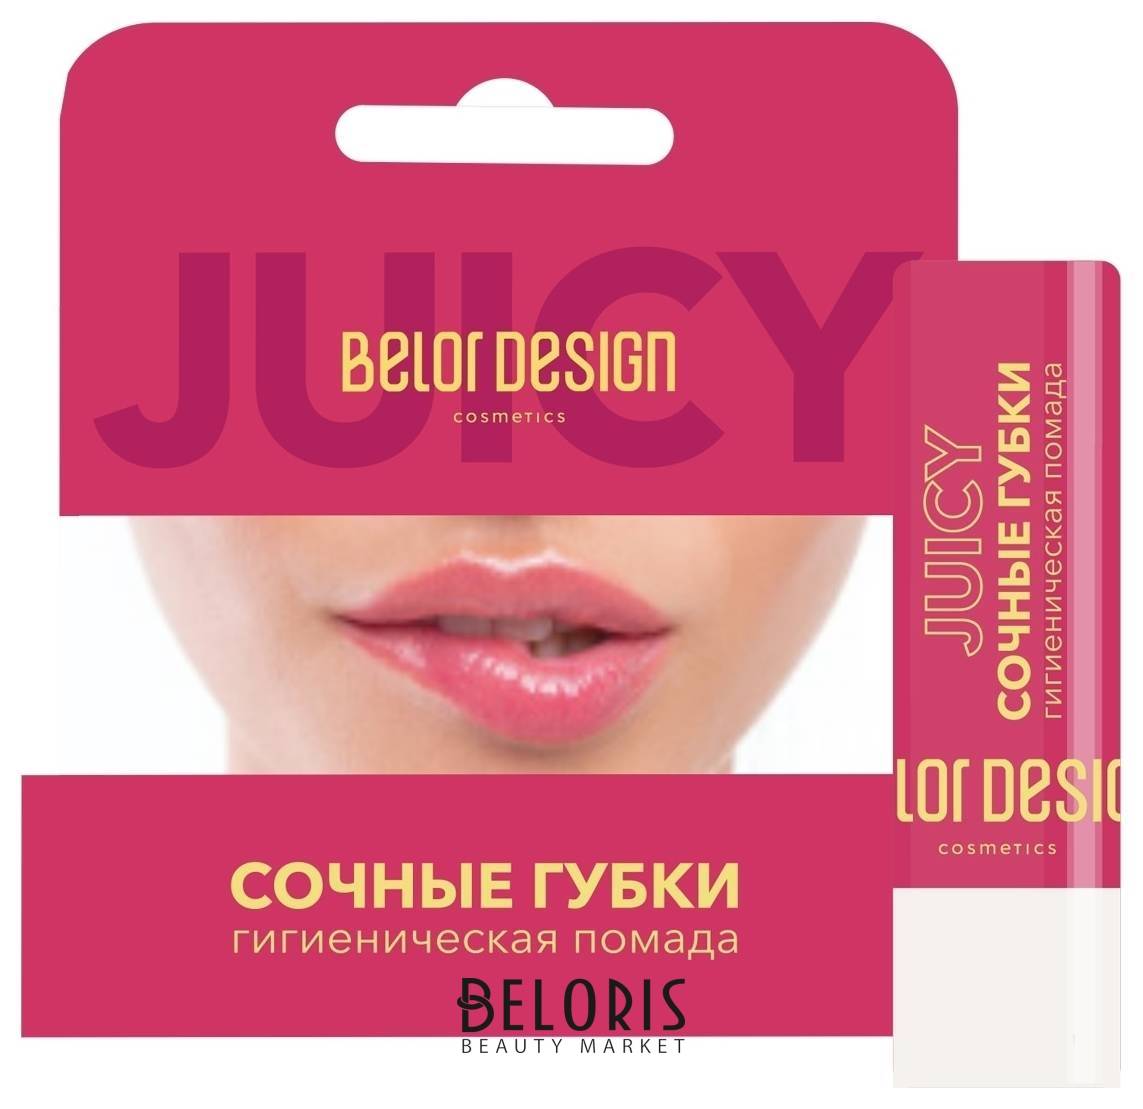 Помада для губ гигиеническая Сочные губки Belor Design Целебный Букет